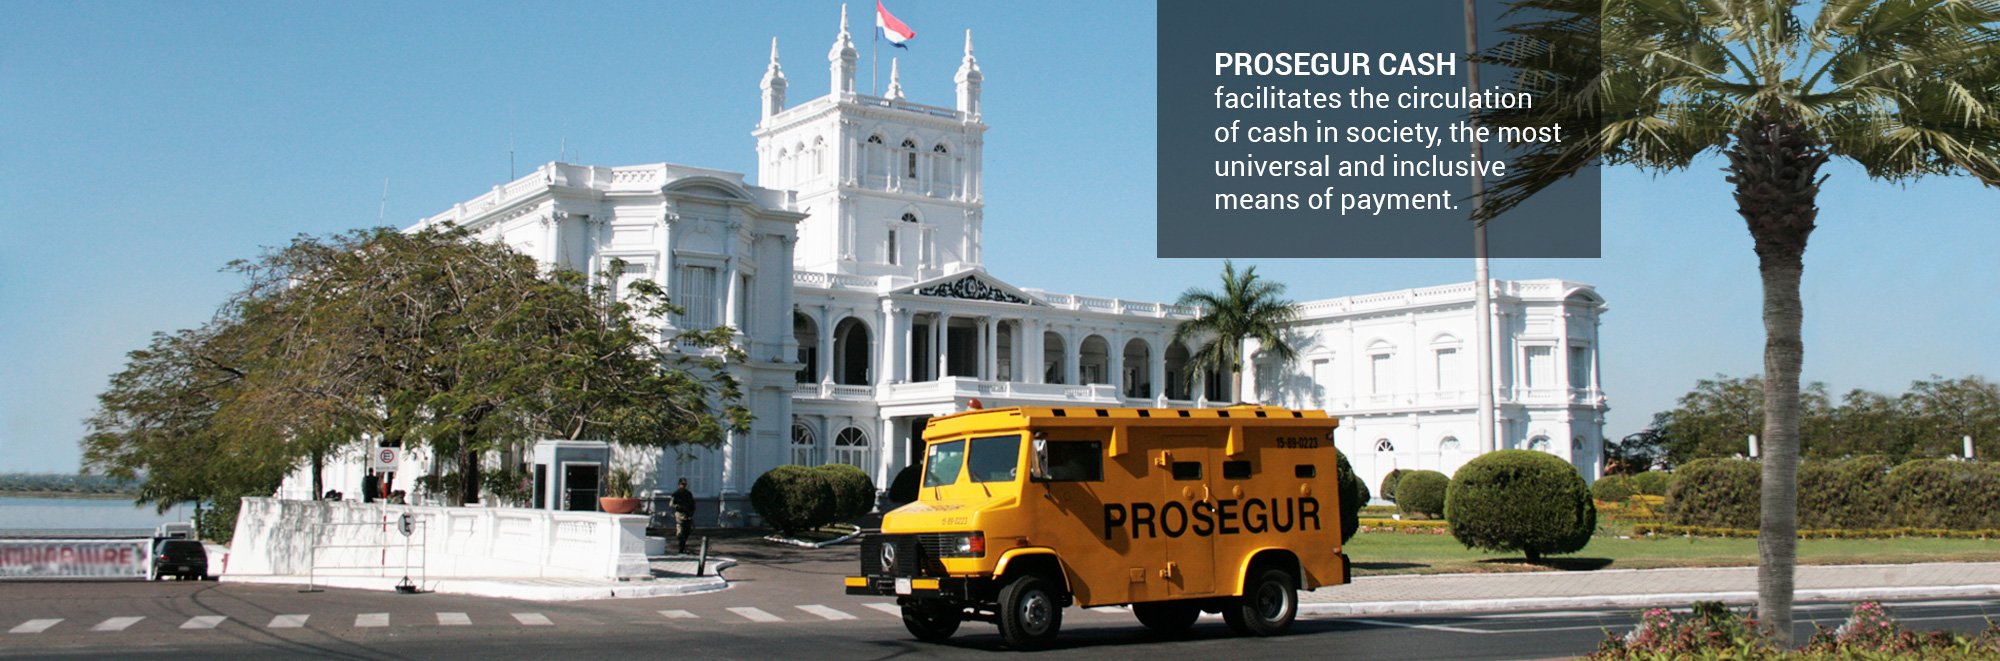 Prosegur Cash facilita la circulación de efectivo en la sociedad, el método de pago más universal e incluyente